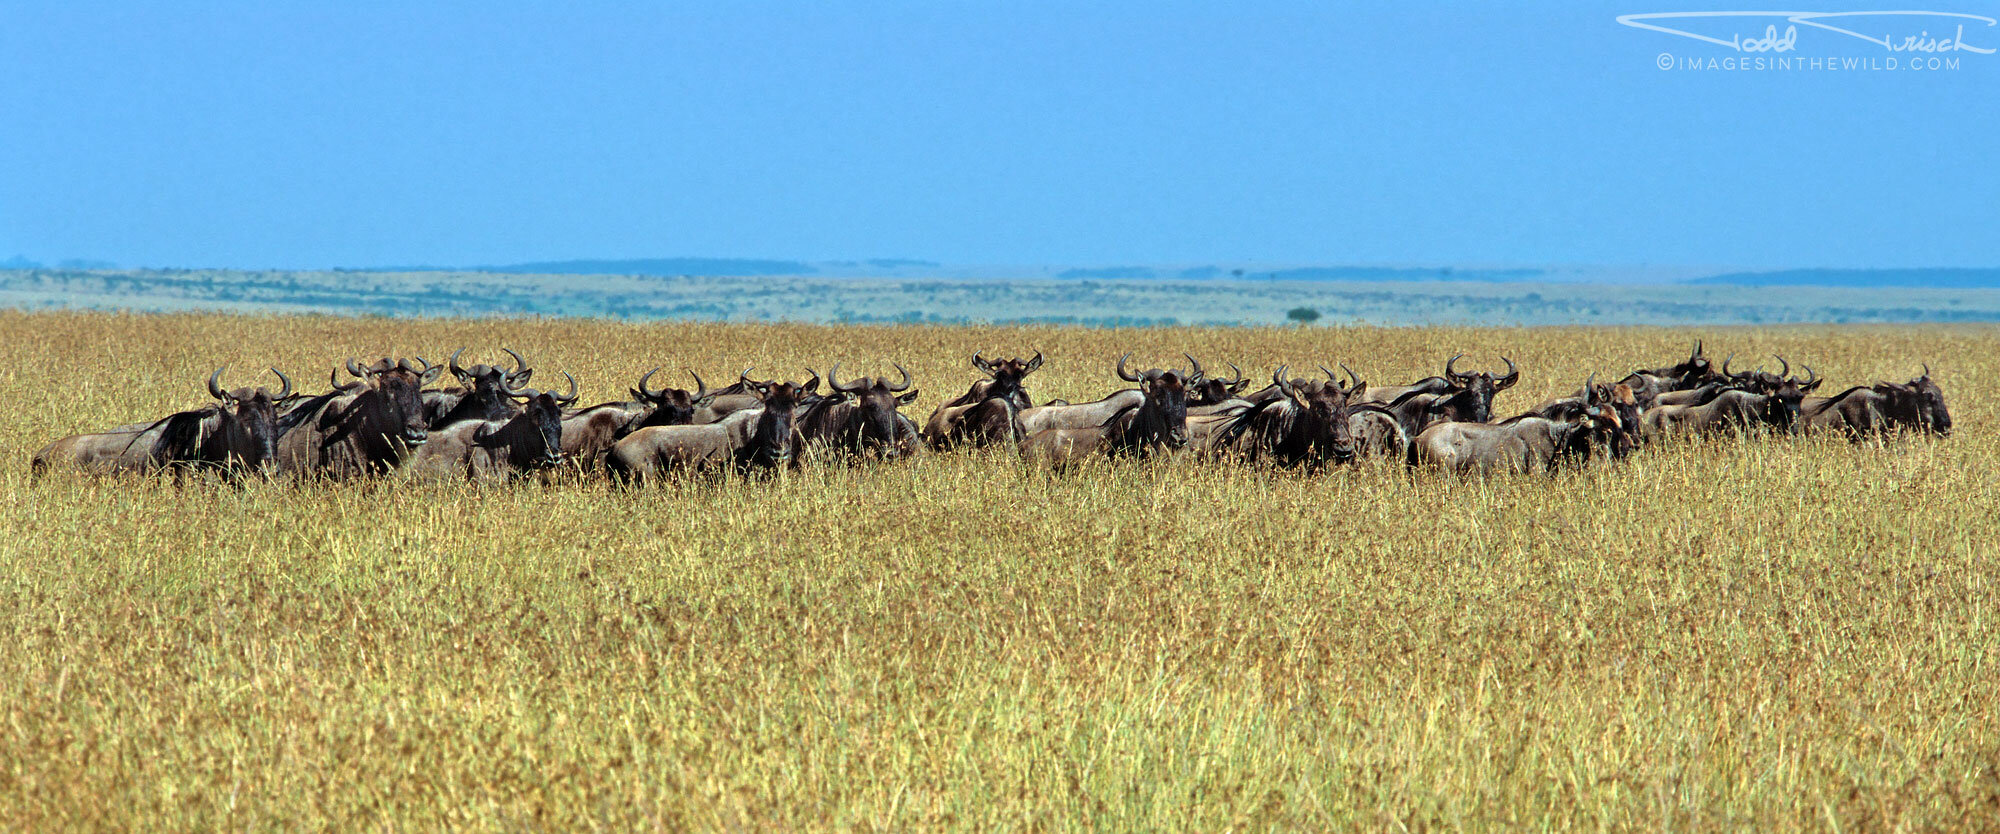  Wildebeest Migration